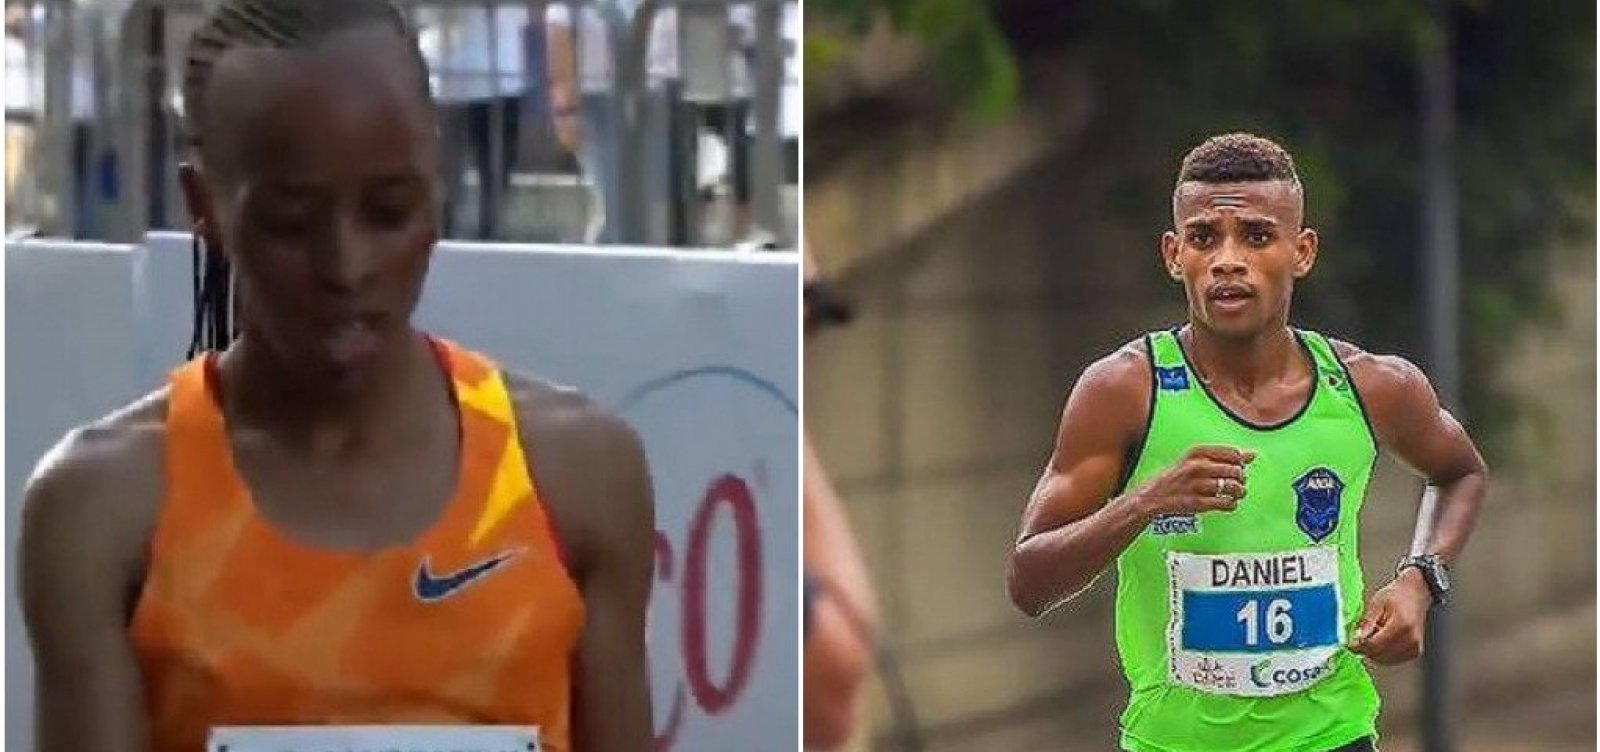 Etíope Belay Bezabeh vence São Silvestre; brasileiro Daniel Nascimento fica em 2º